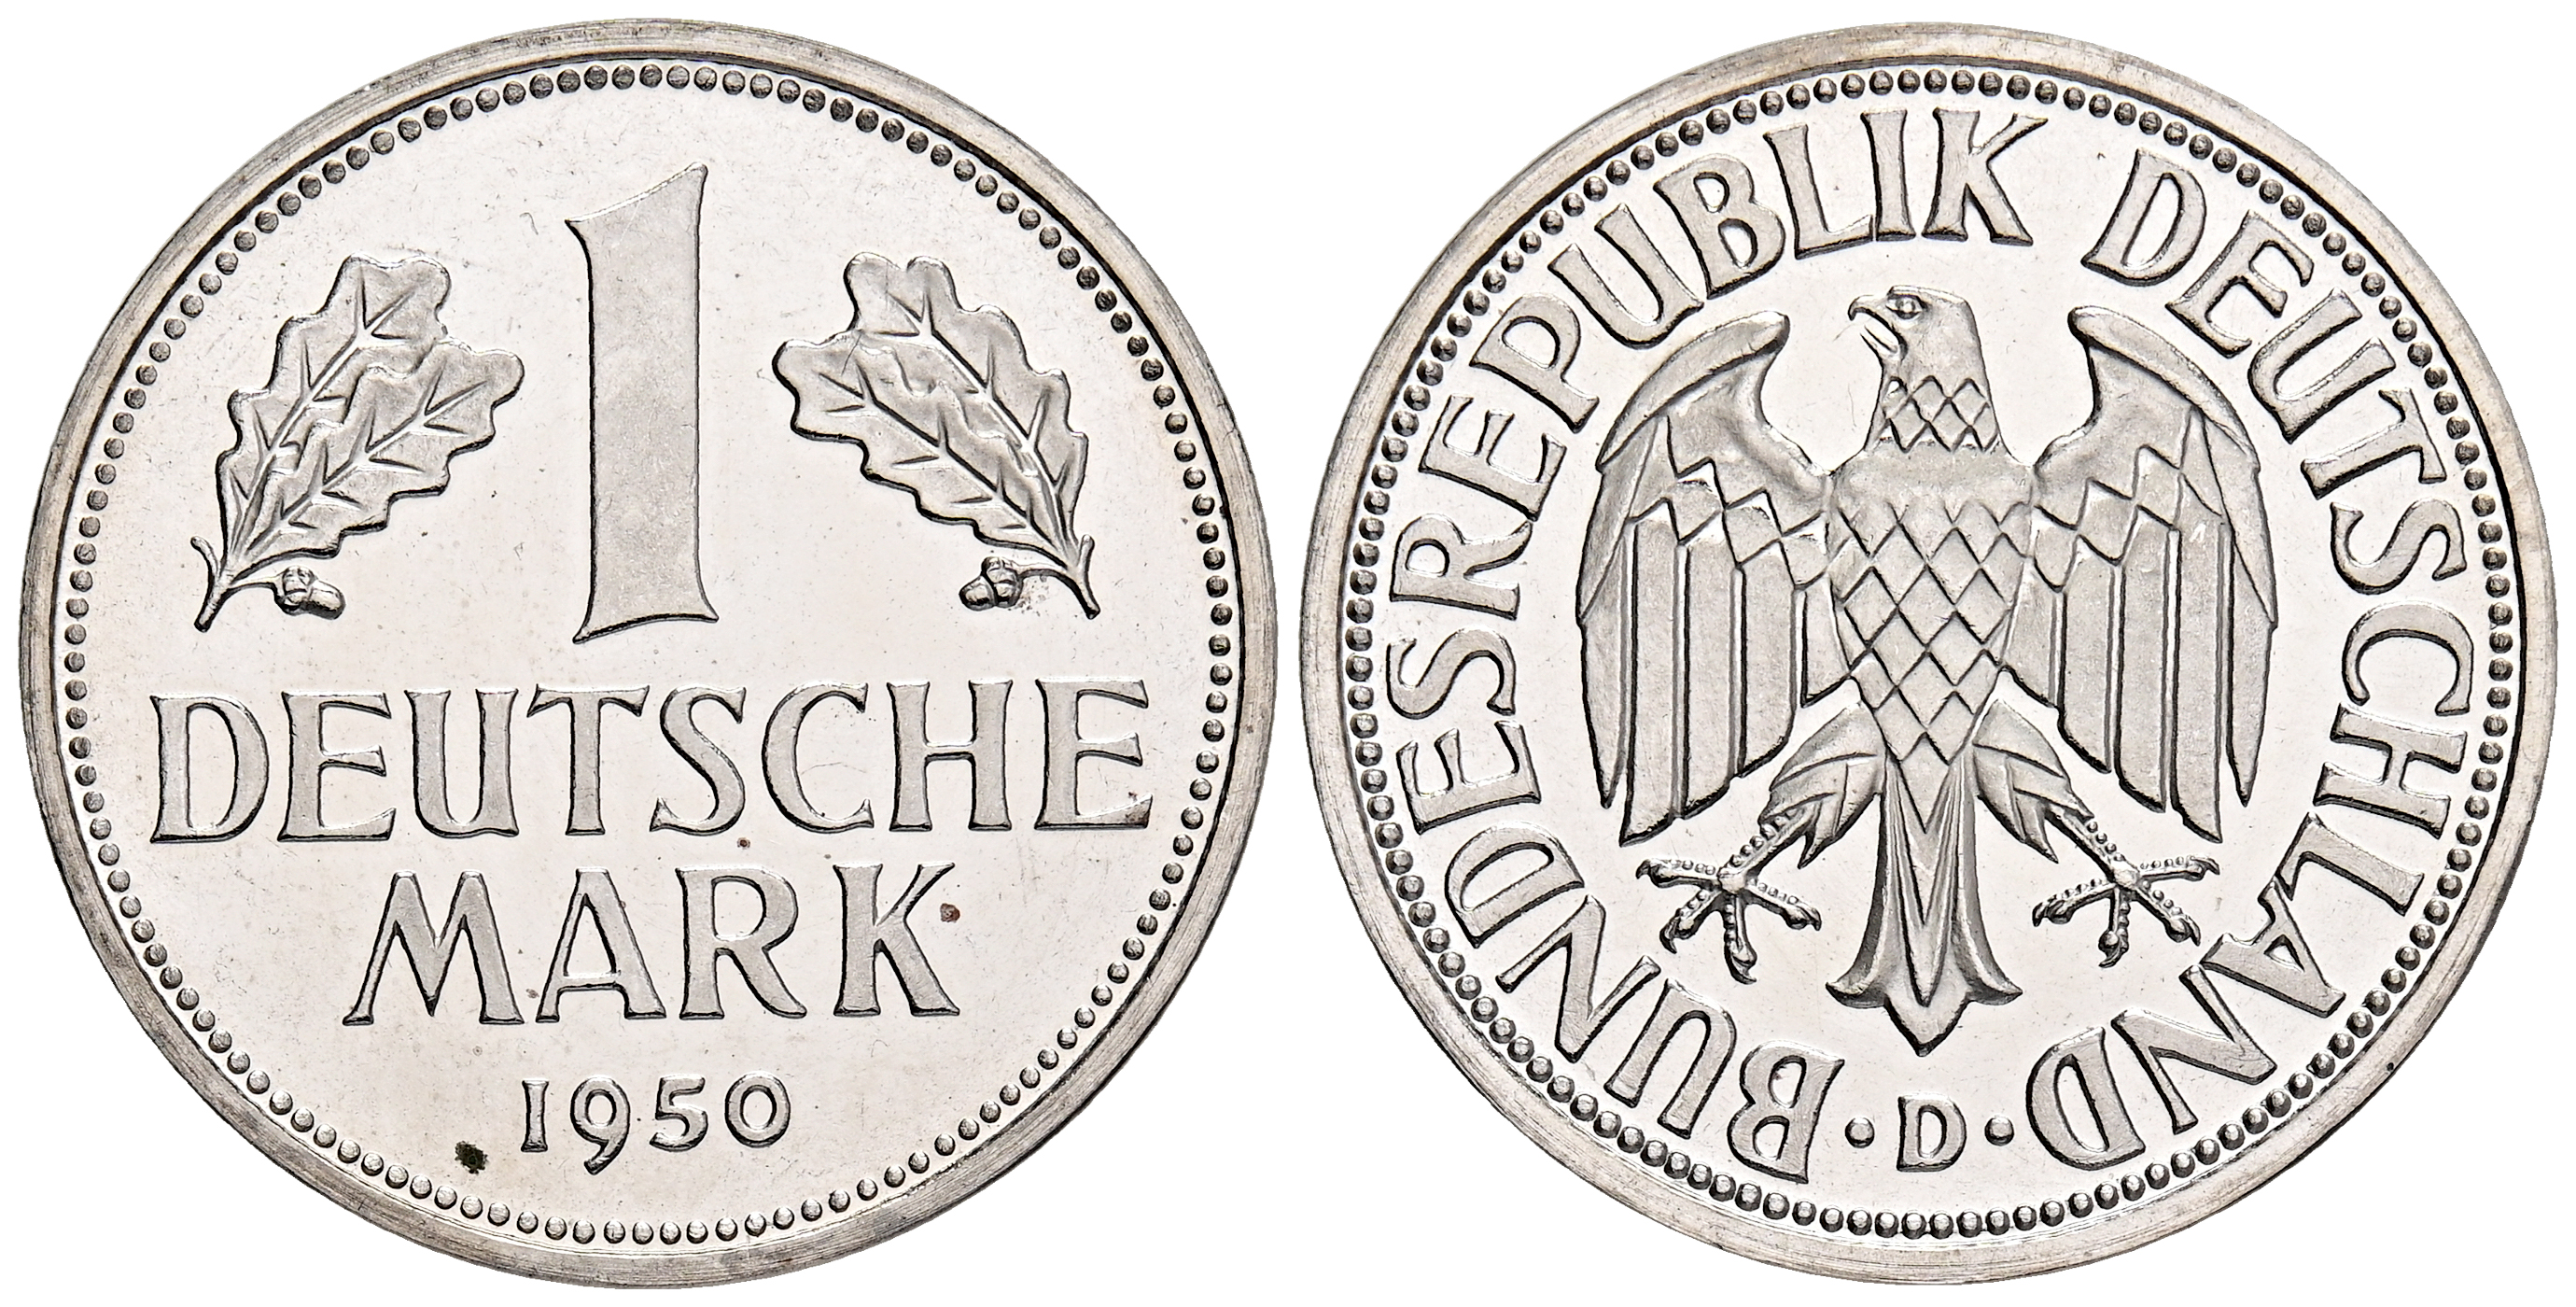 Deutsche mark. 1 Монета Германии. Немецкие марки монеты. Золотая марка Германия 1871. Германия 1 марка 1989.